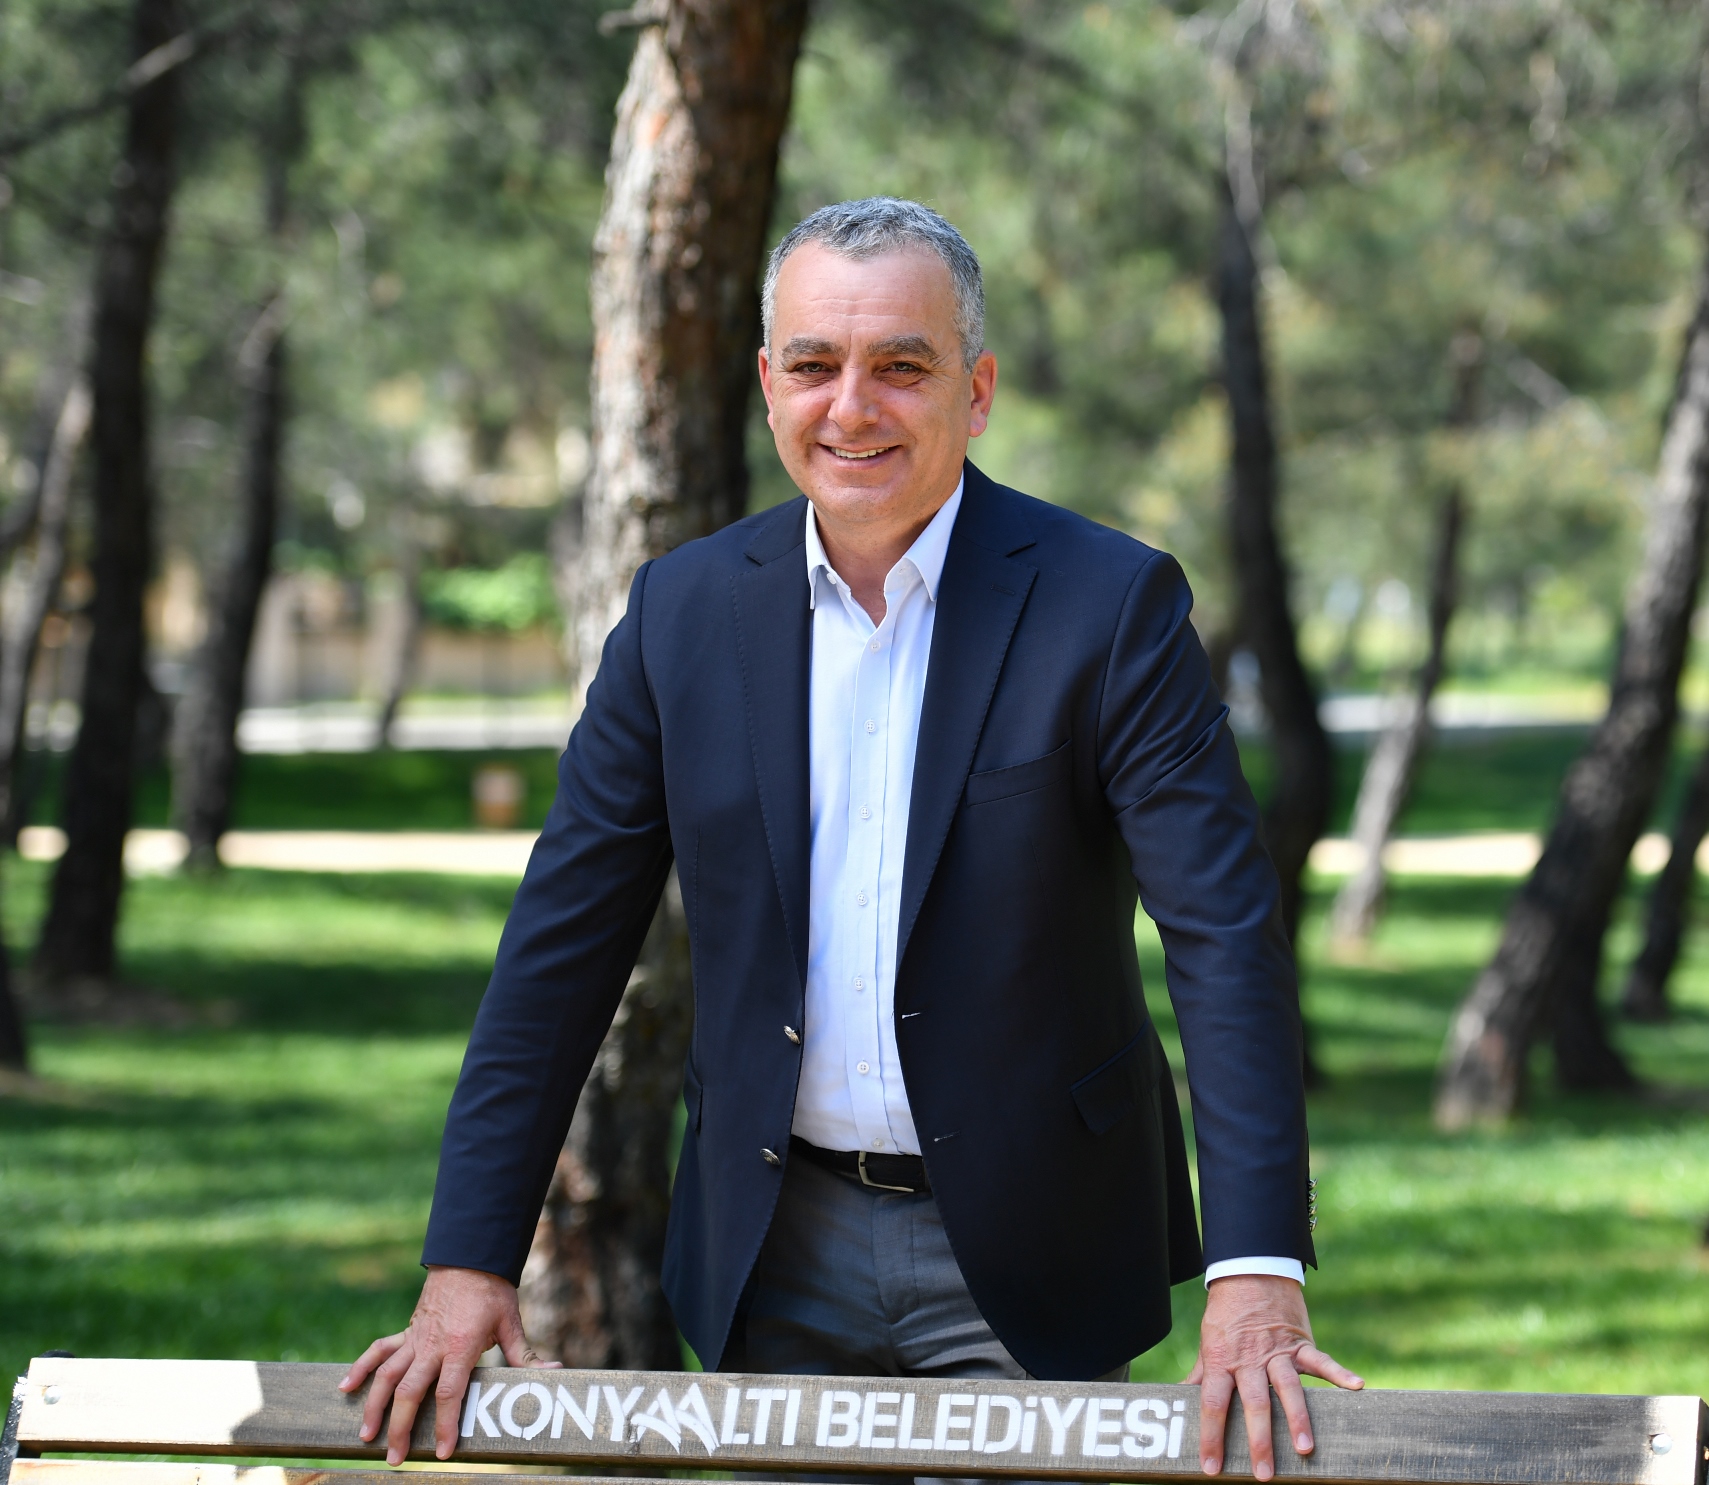 Konyaaltı Belediye Başkanı Semih Esen 